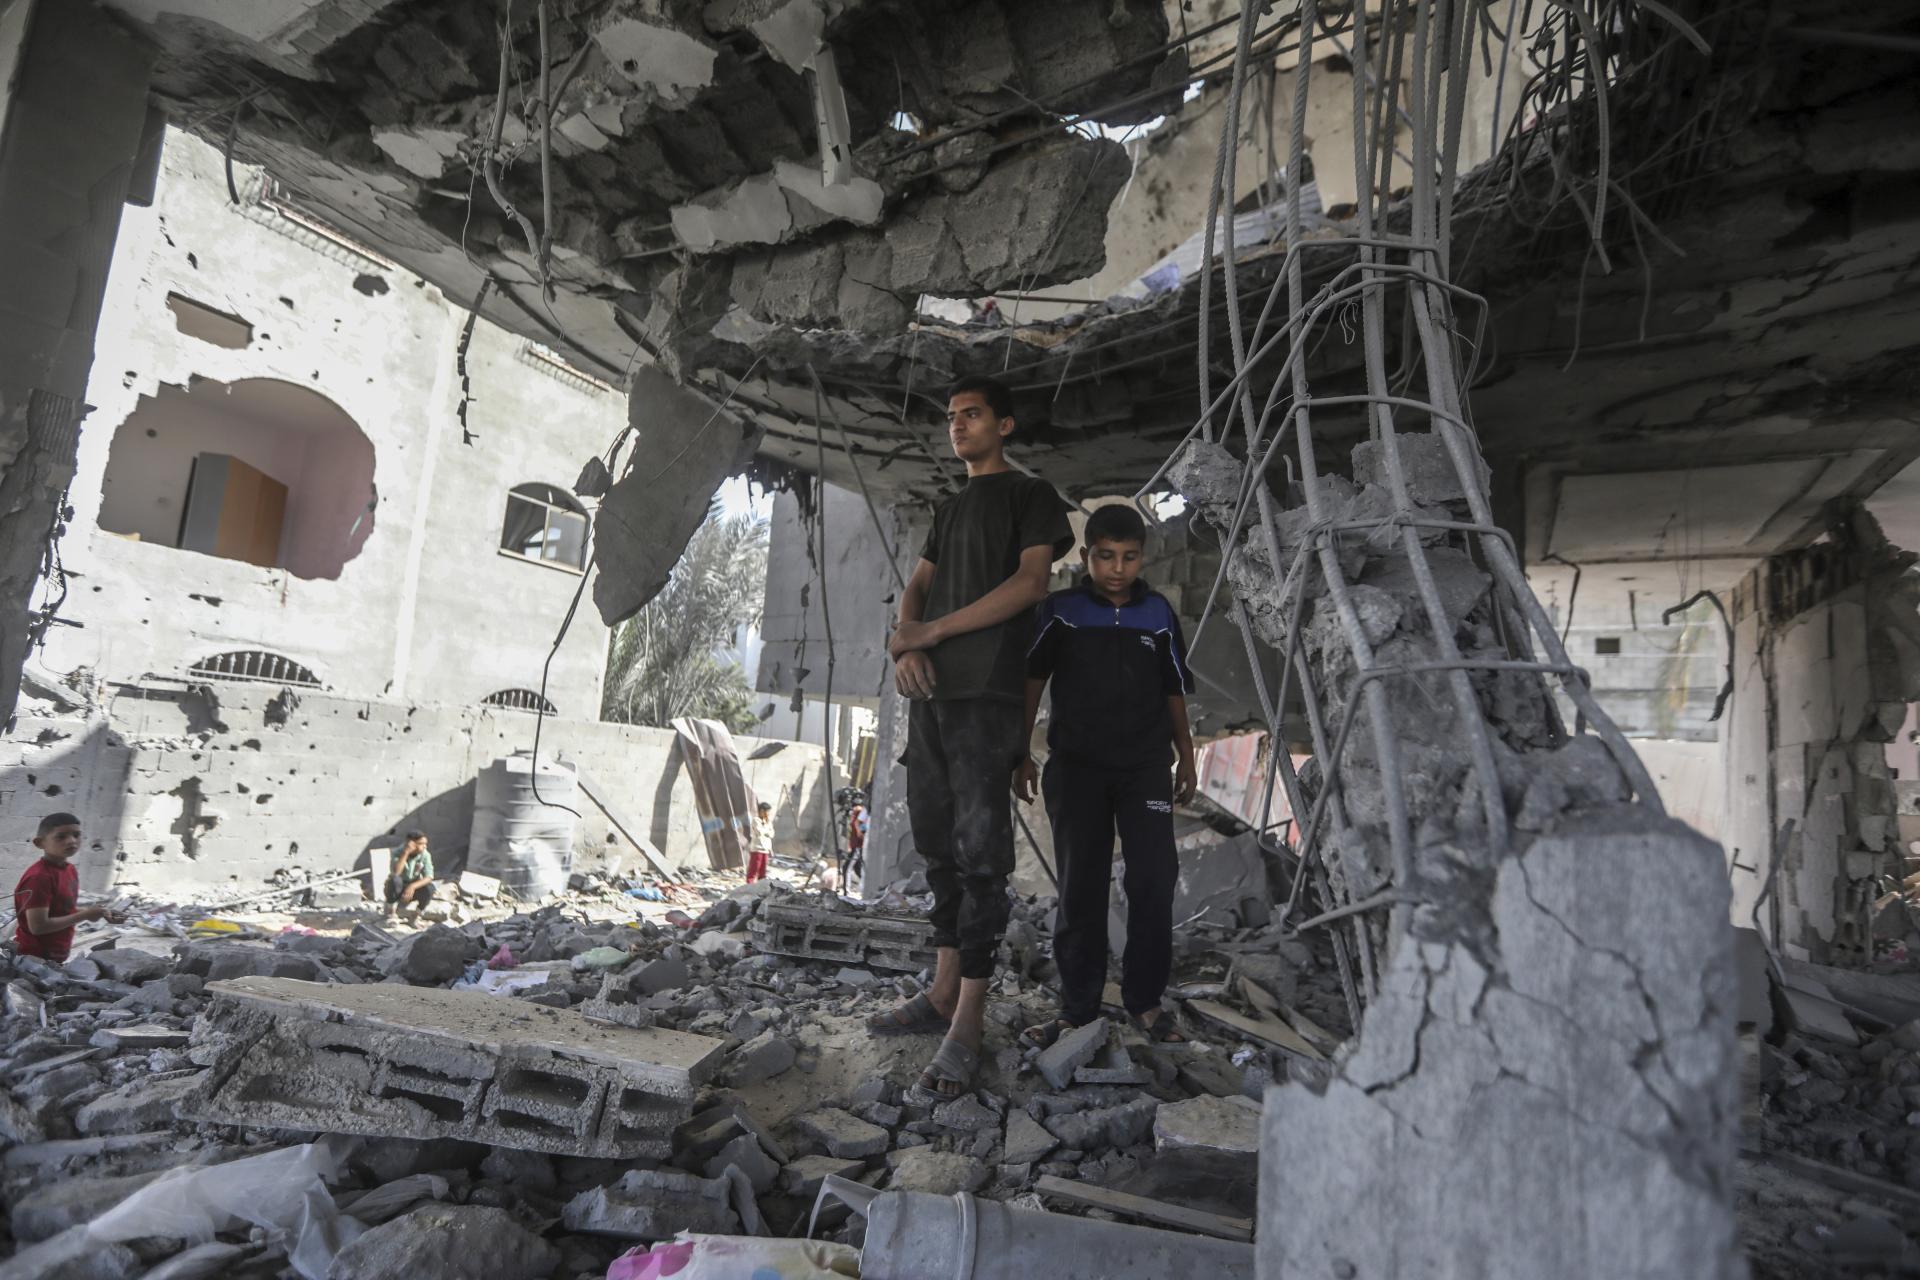 Izrael informoval USA o pláne na evakuáciu civilistov pred vojenským zásahom v Rafahu, názor však nezmenili